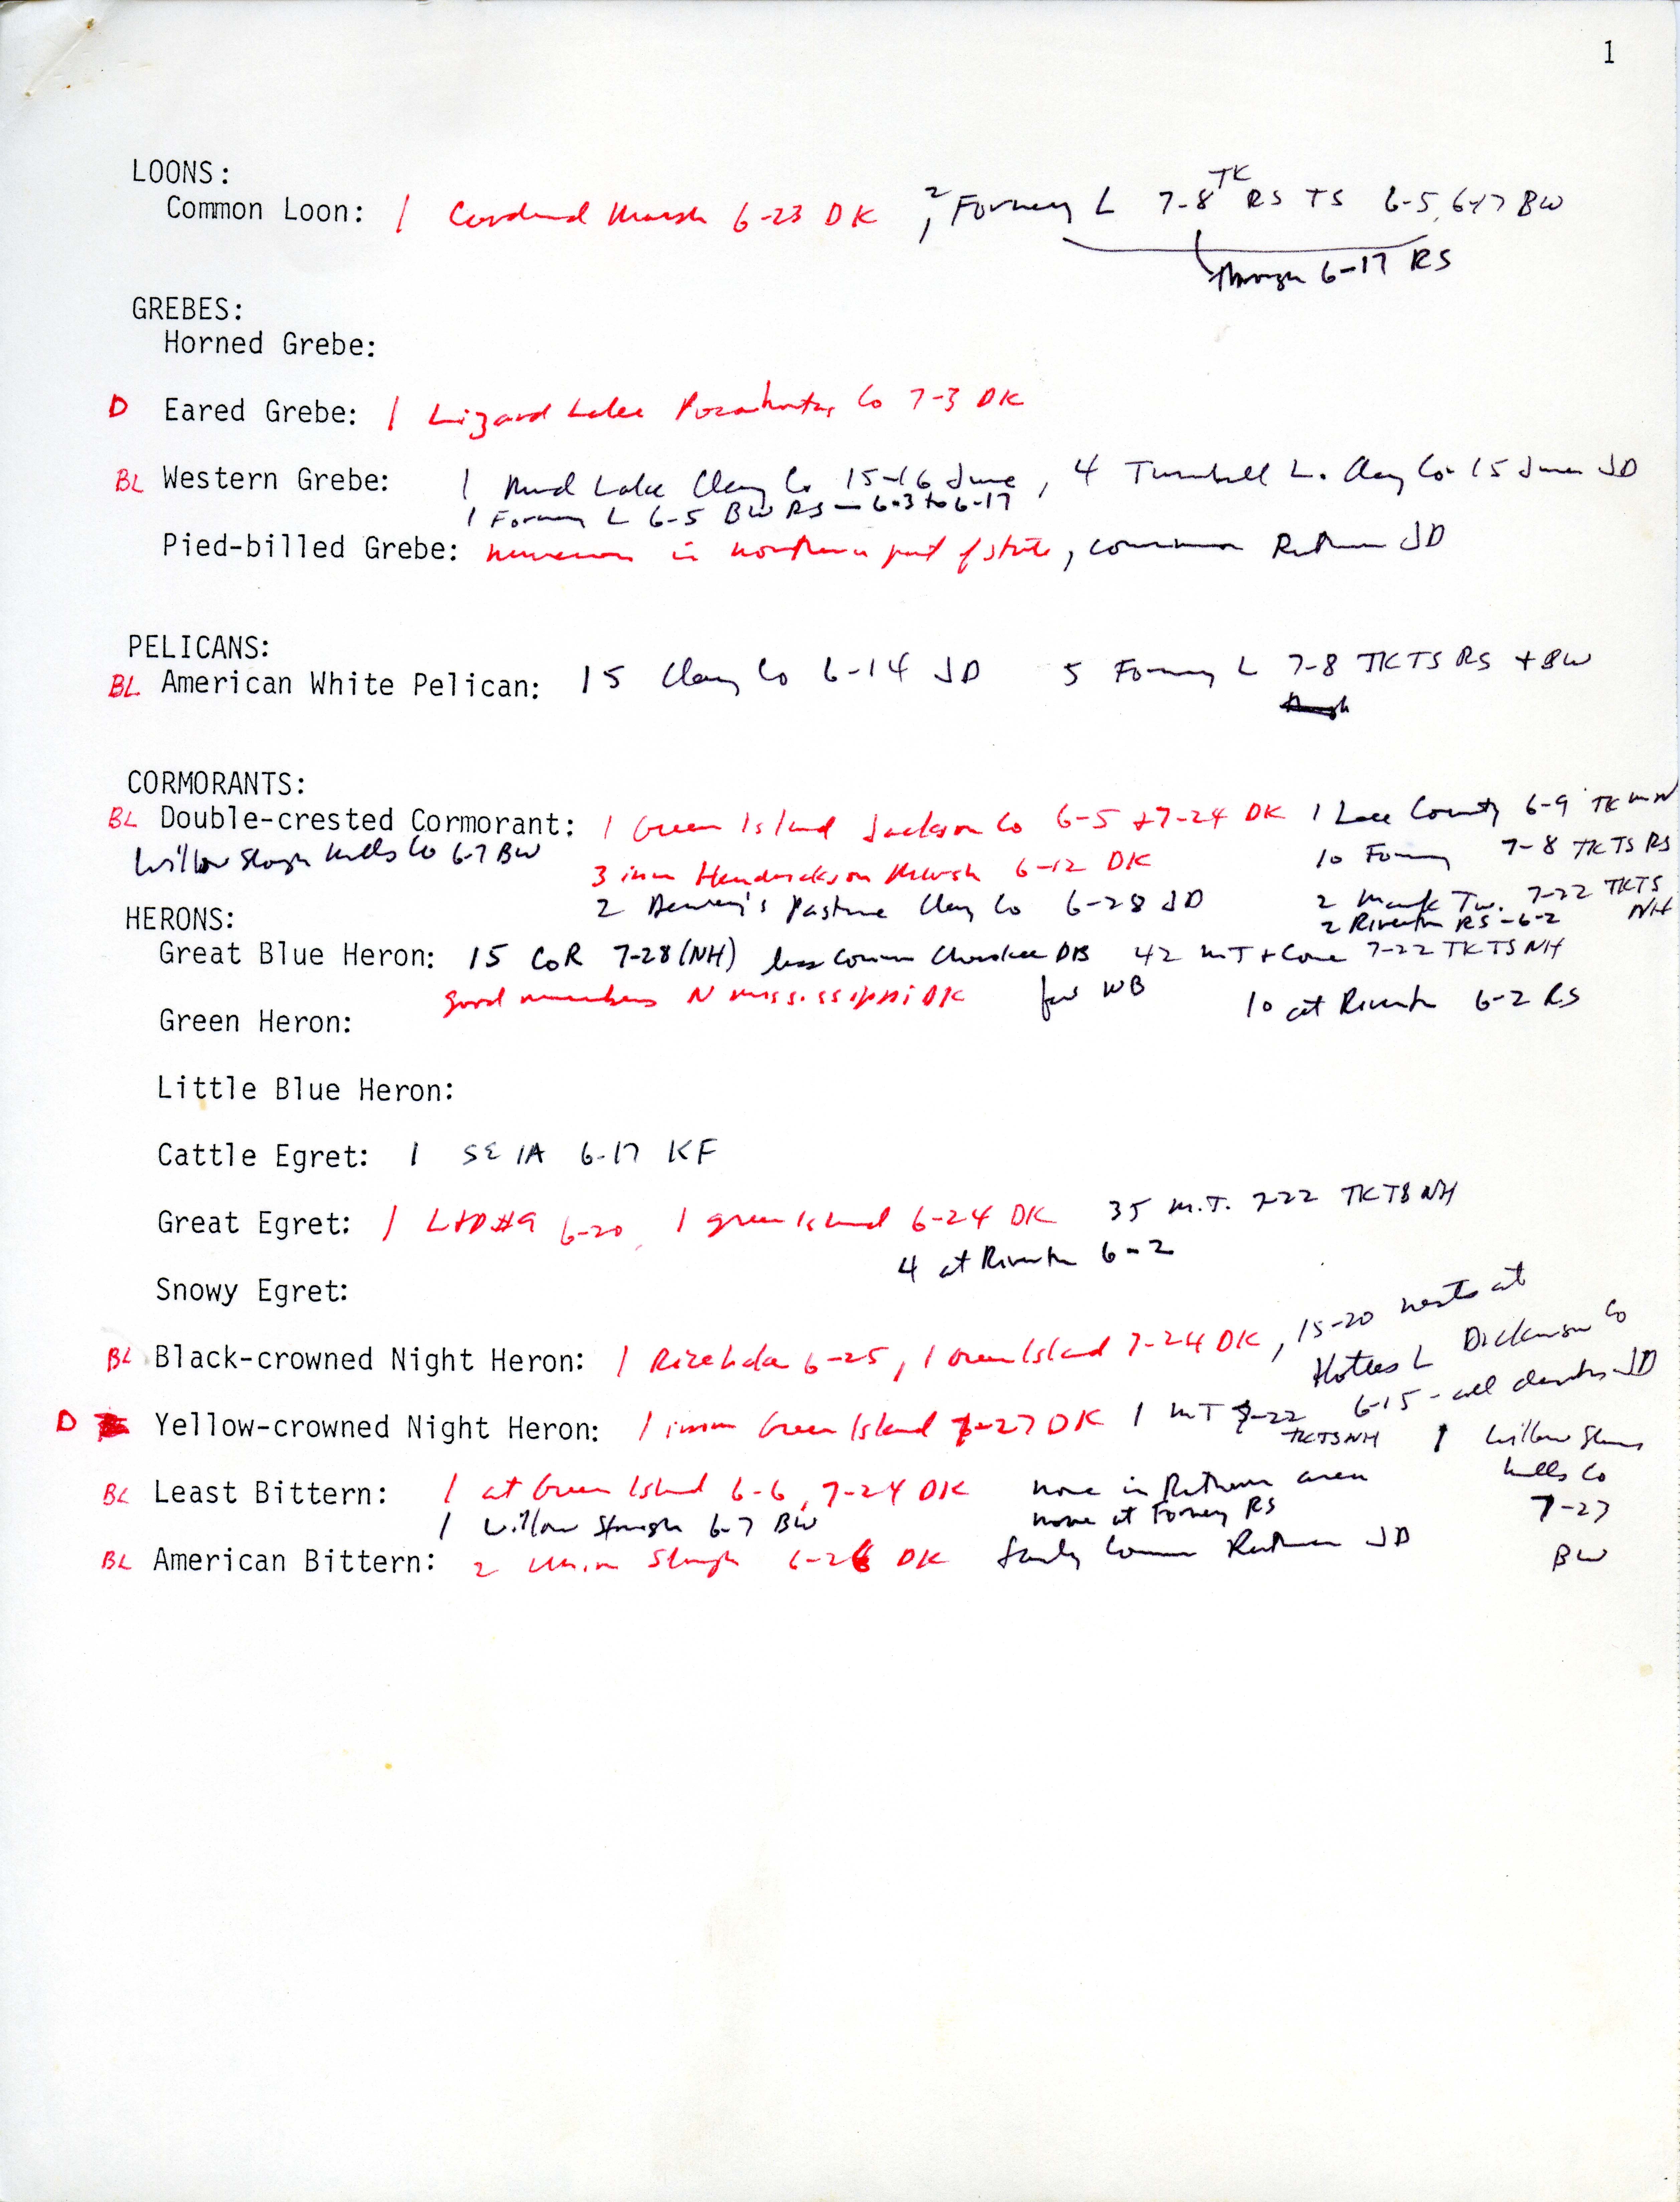 Annotated bird sightings list, summer 1979